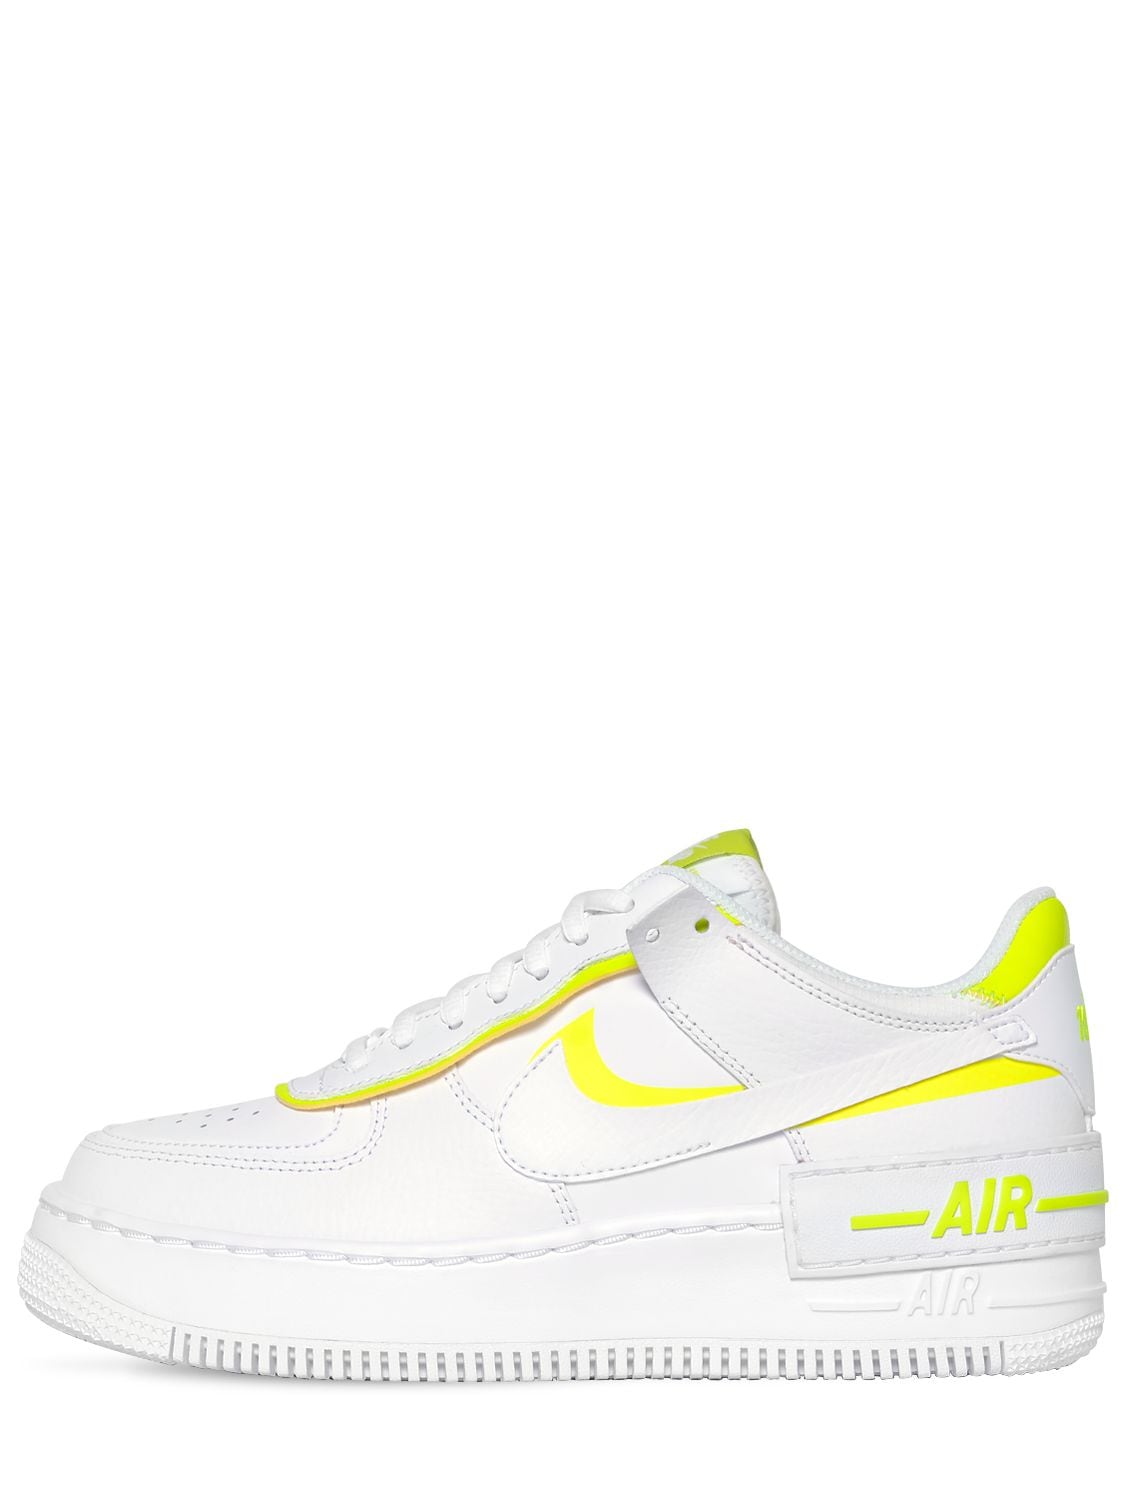 Nike Af1 Shadow Sneakers In White,lemon